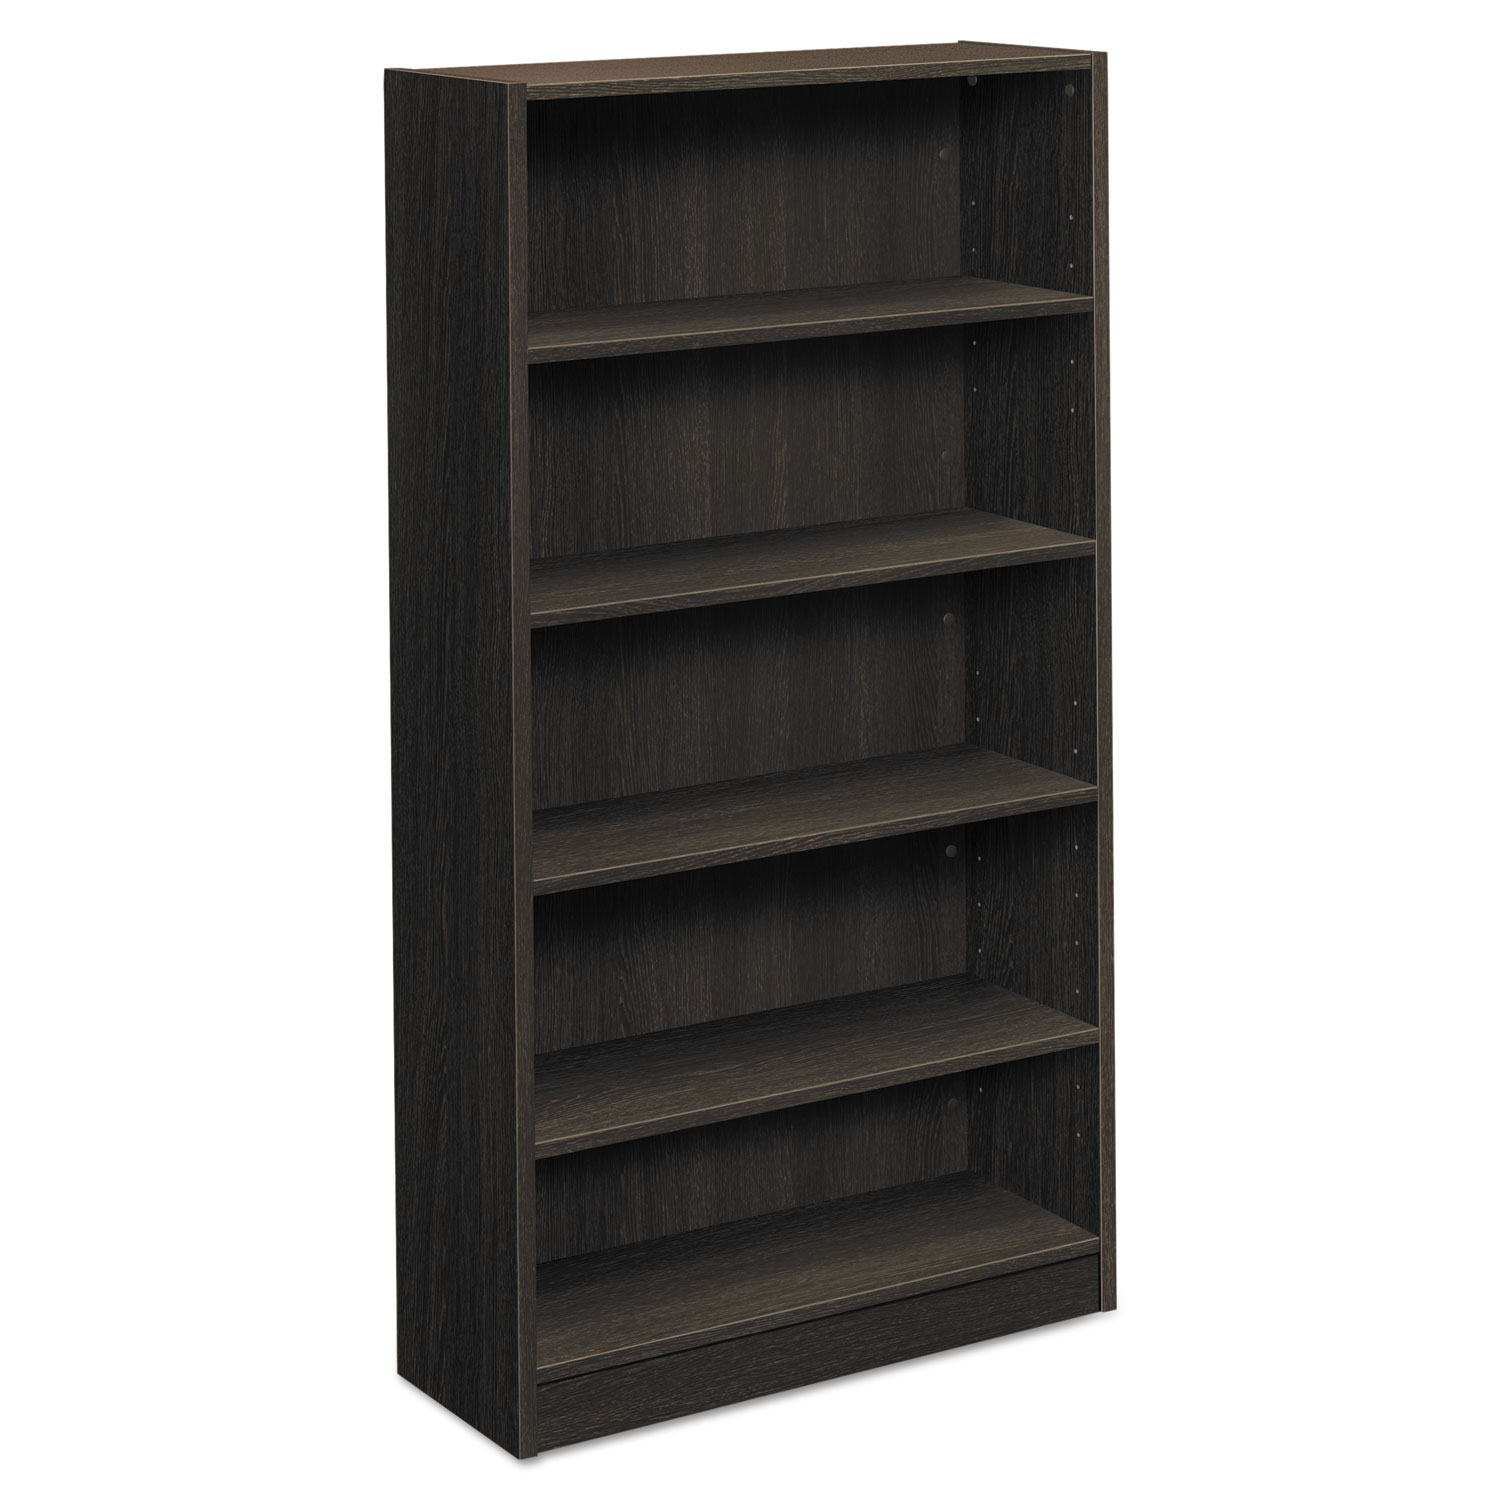 BL Laminate Series Five Shelf Bookcase, 32w x 13 13/16d x 65 3/8h, Espresso